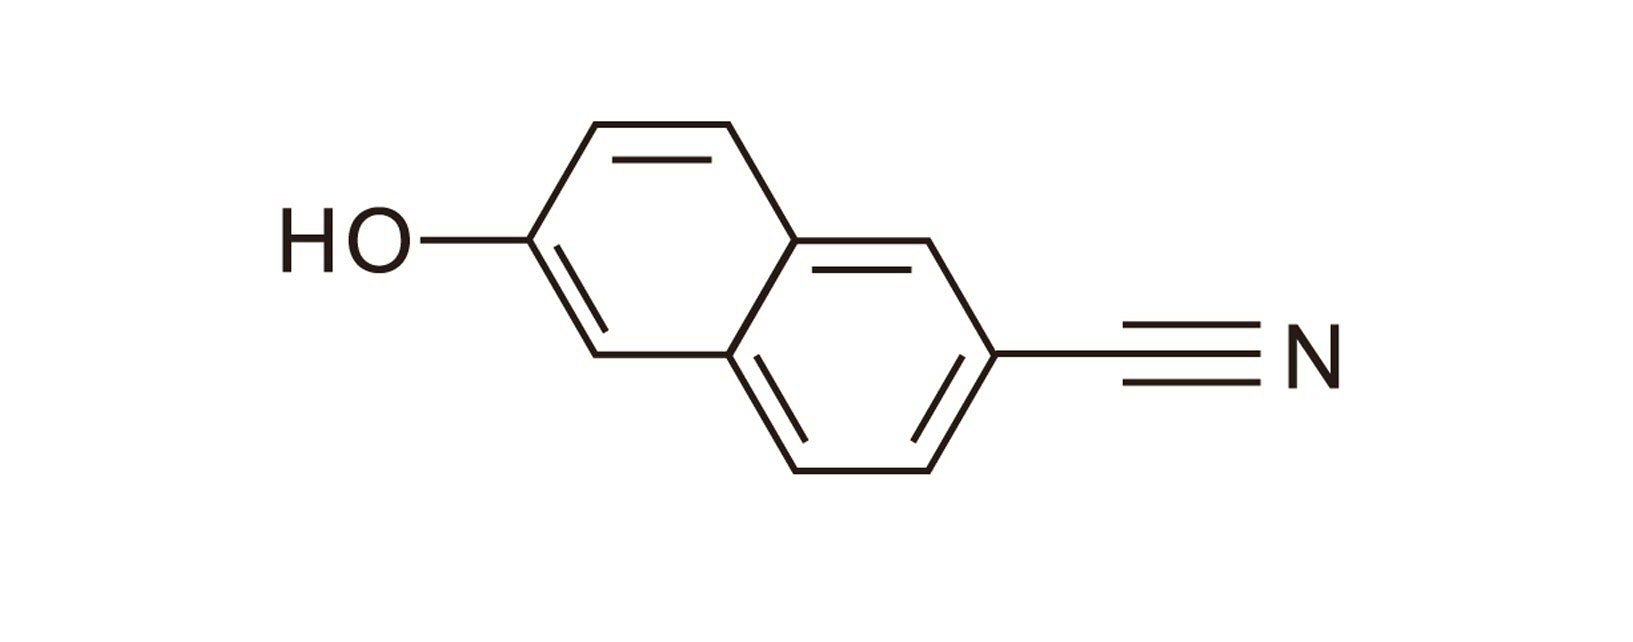 6-Cyano-2-naphthol(Nafamostat  mesylate)